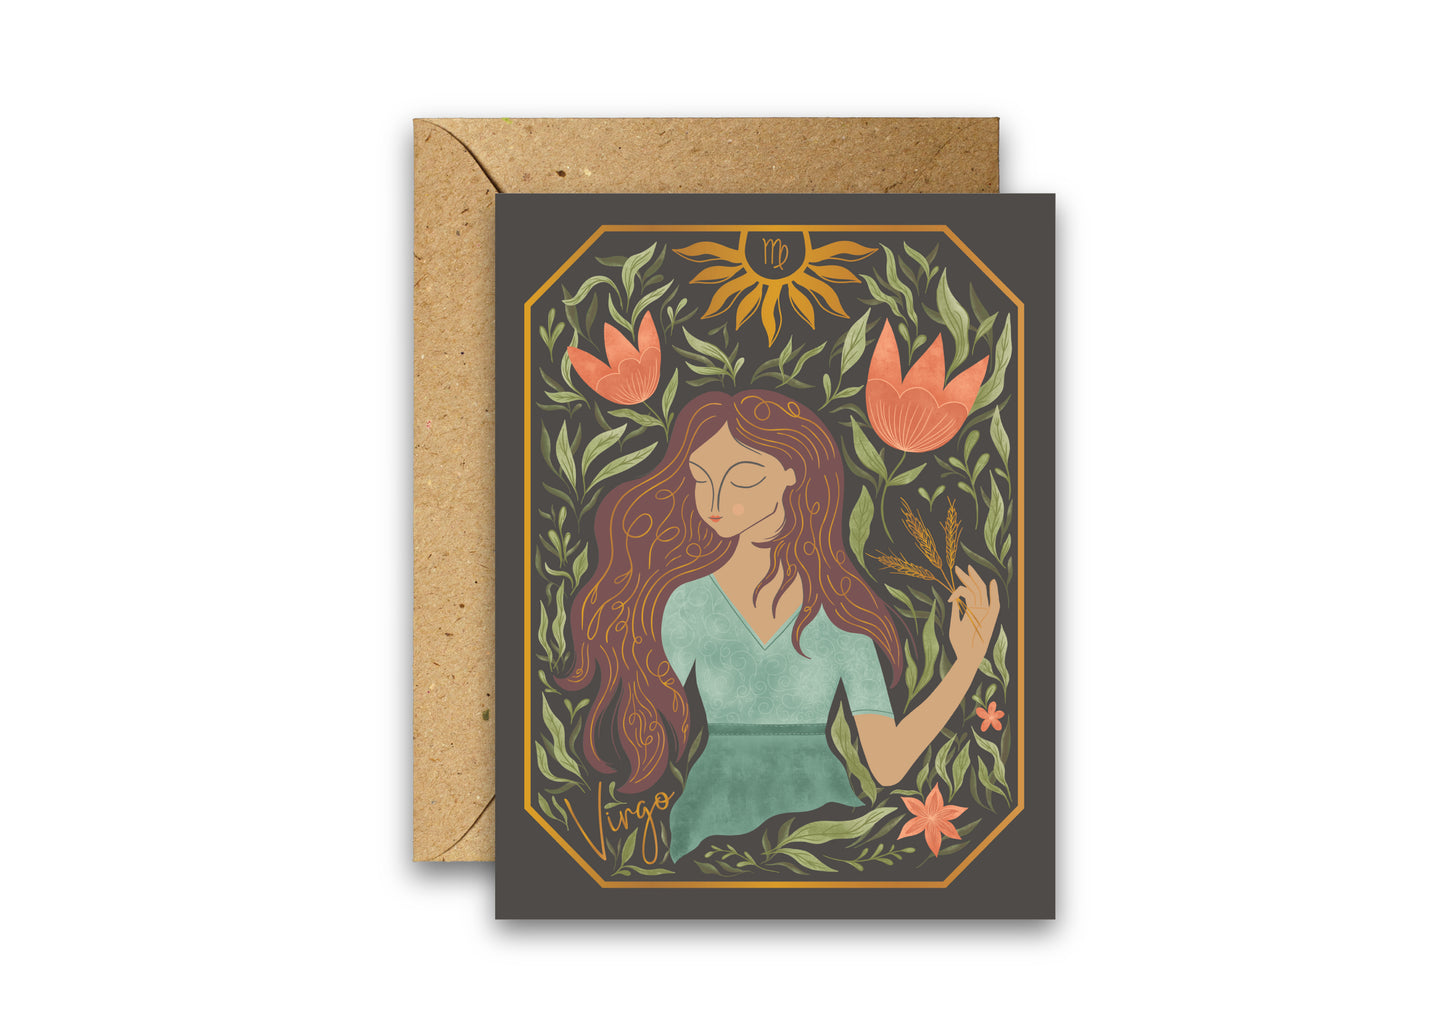 The Virgo Zodiac Garden Gold Foil Greeting Card